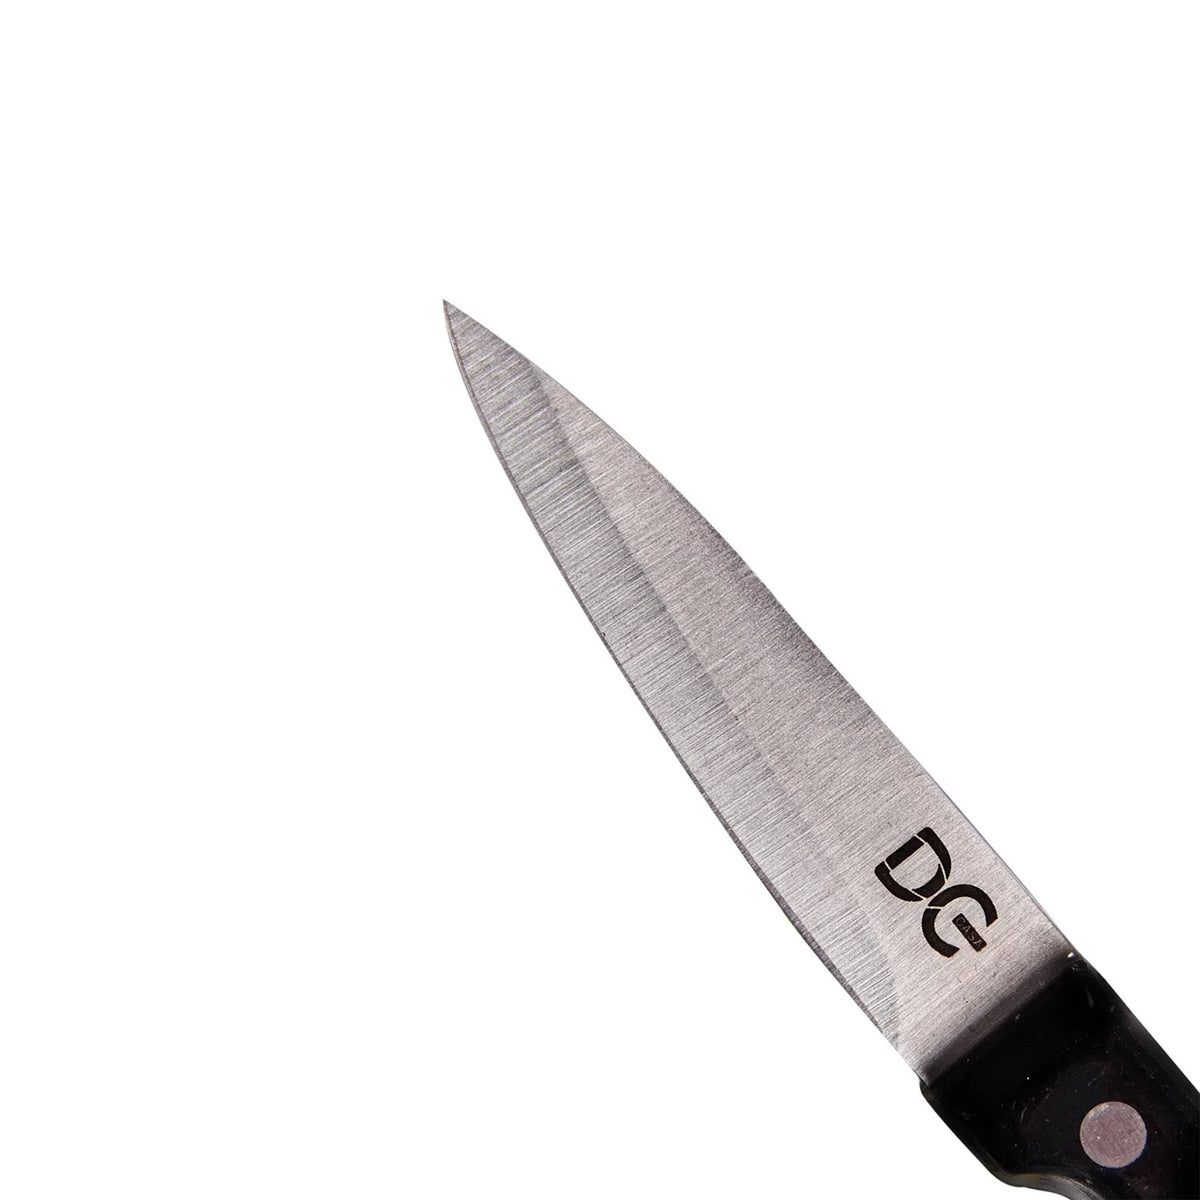 Couteau d'Office Acier Manche Ergonomique Noir - 9cm